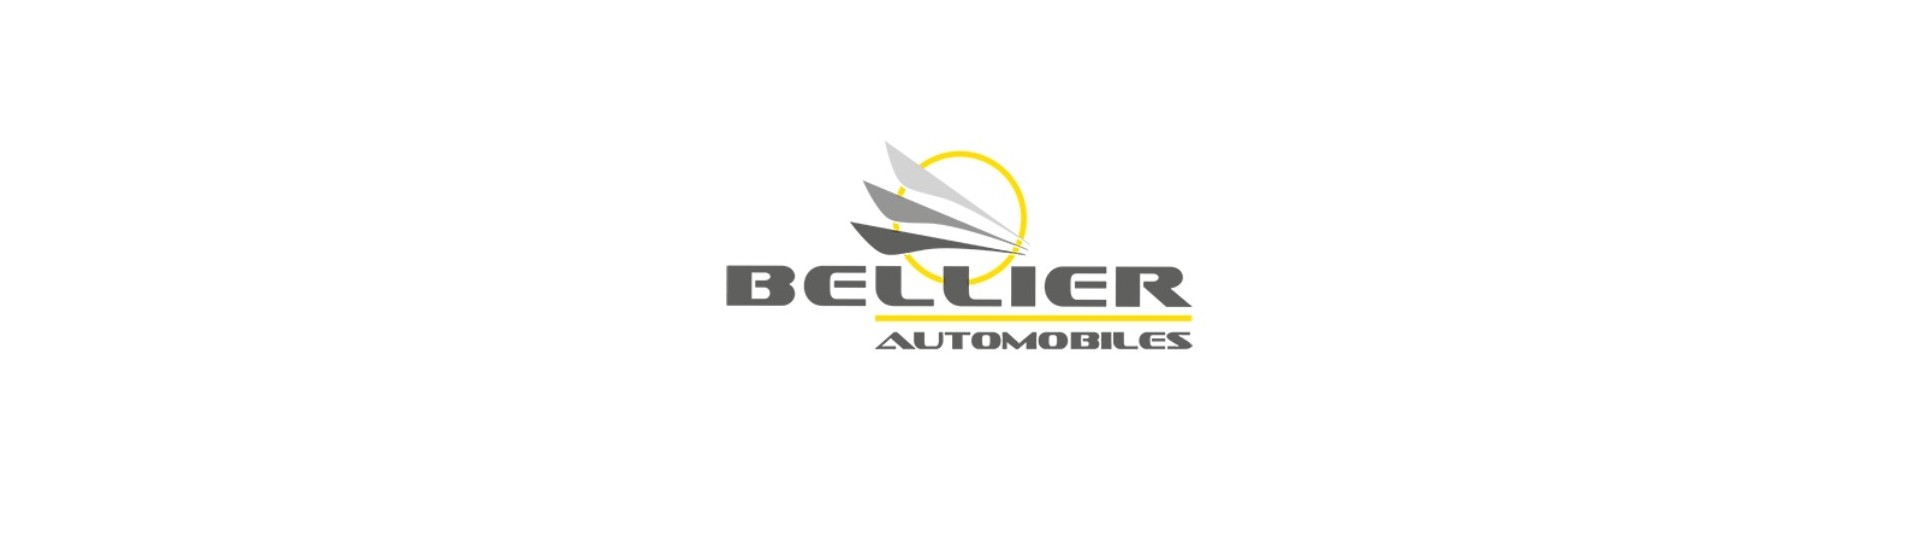 Pachet roți la cel mai bun preț pentru mașini fără permis Bellier